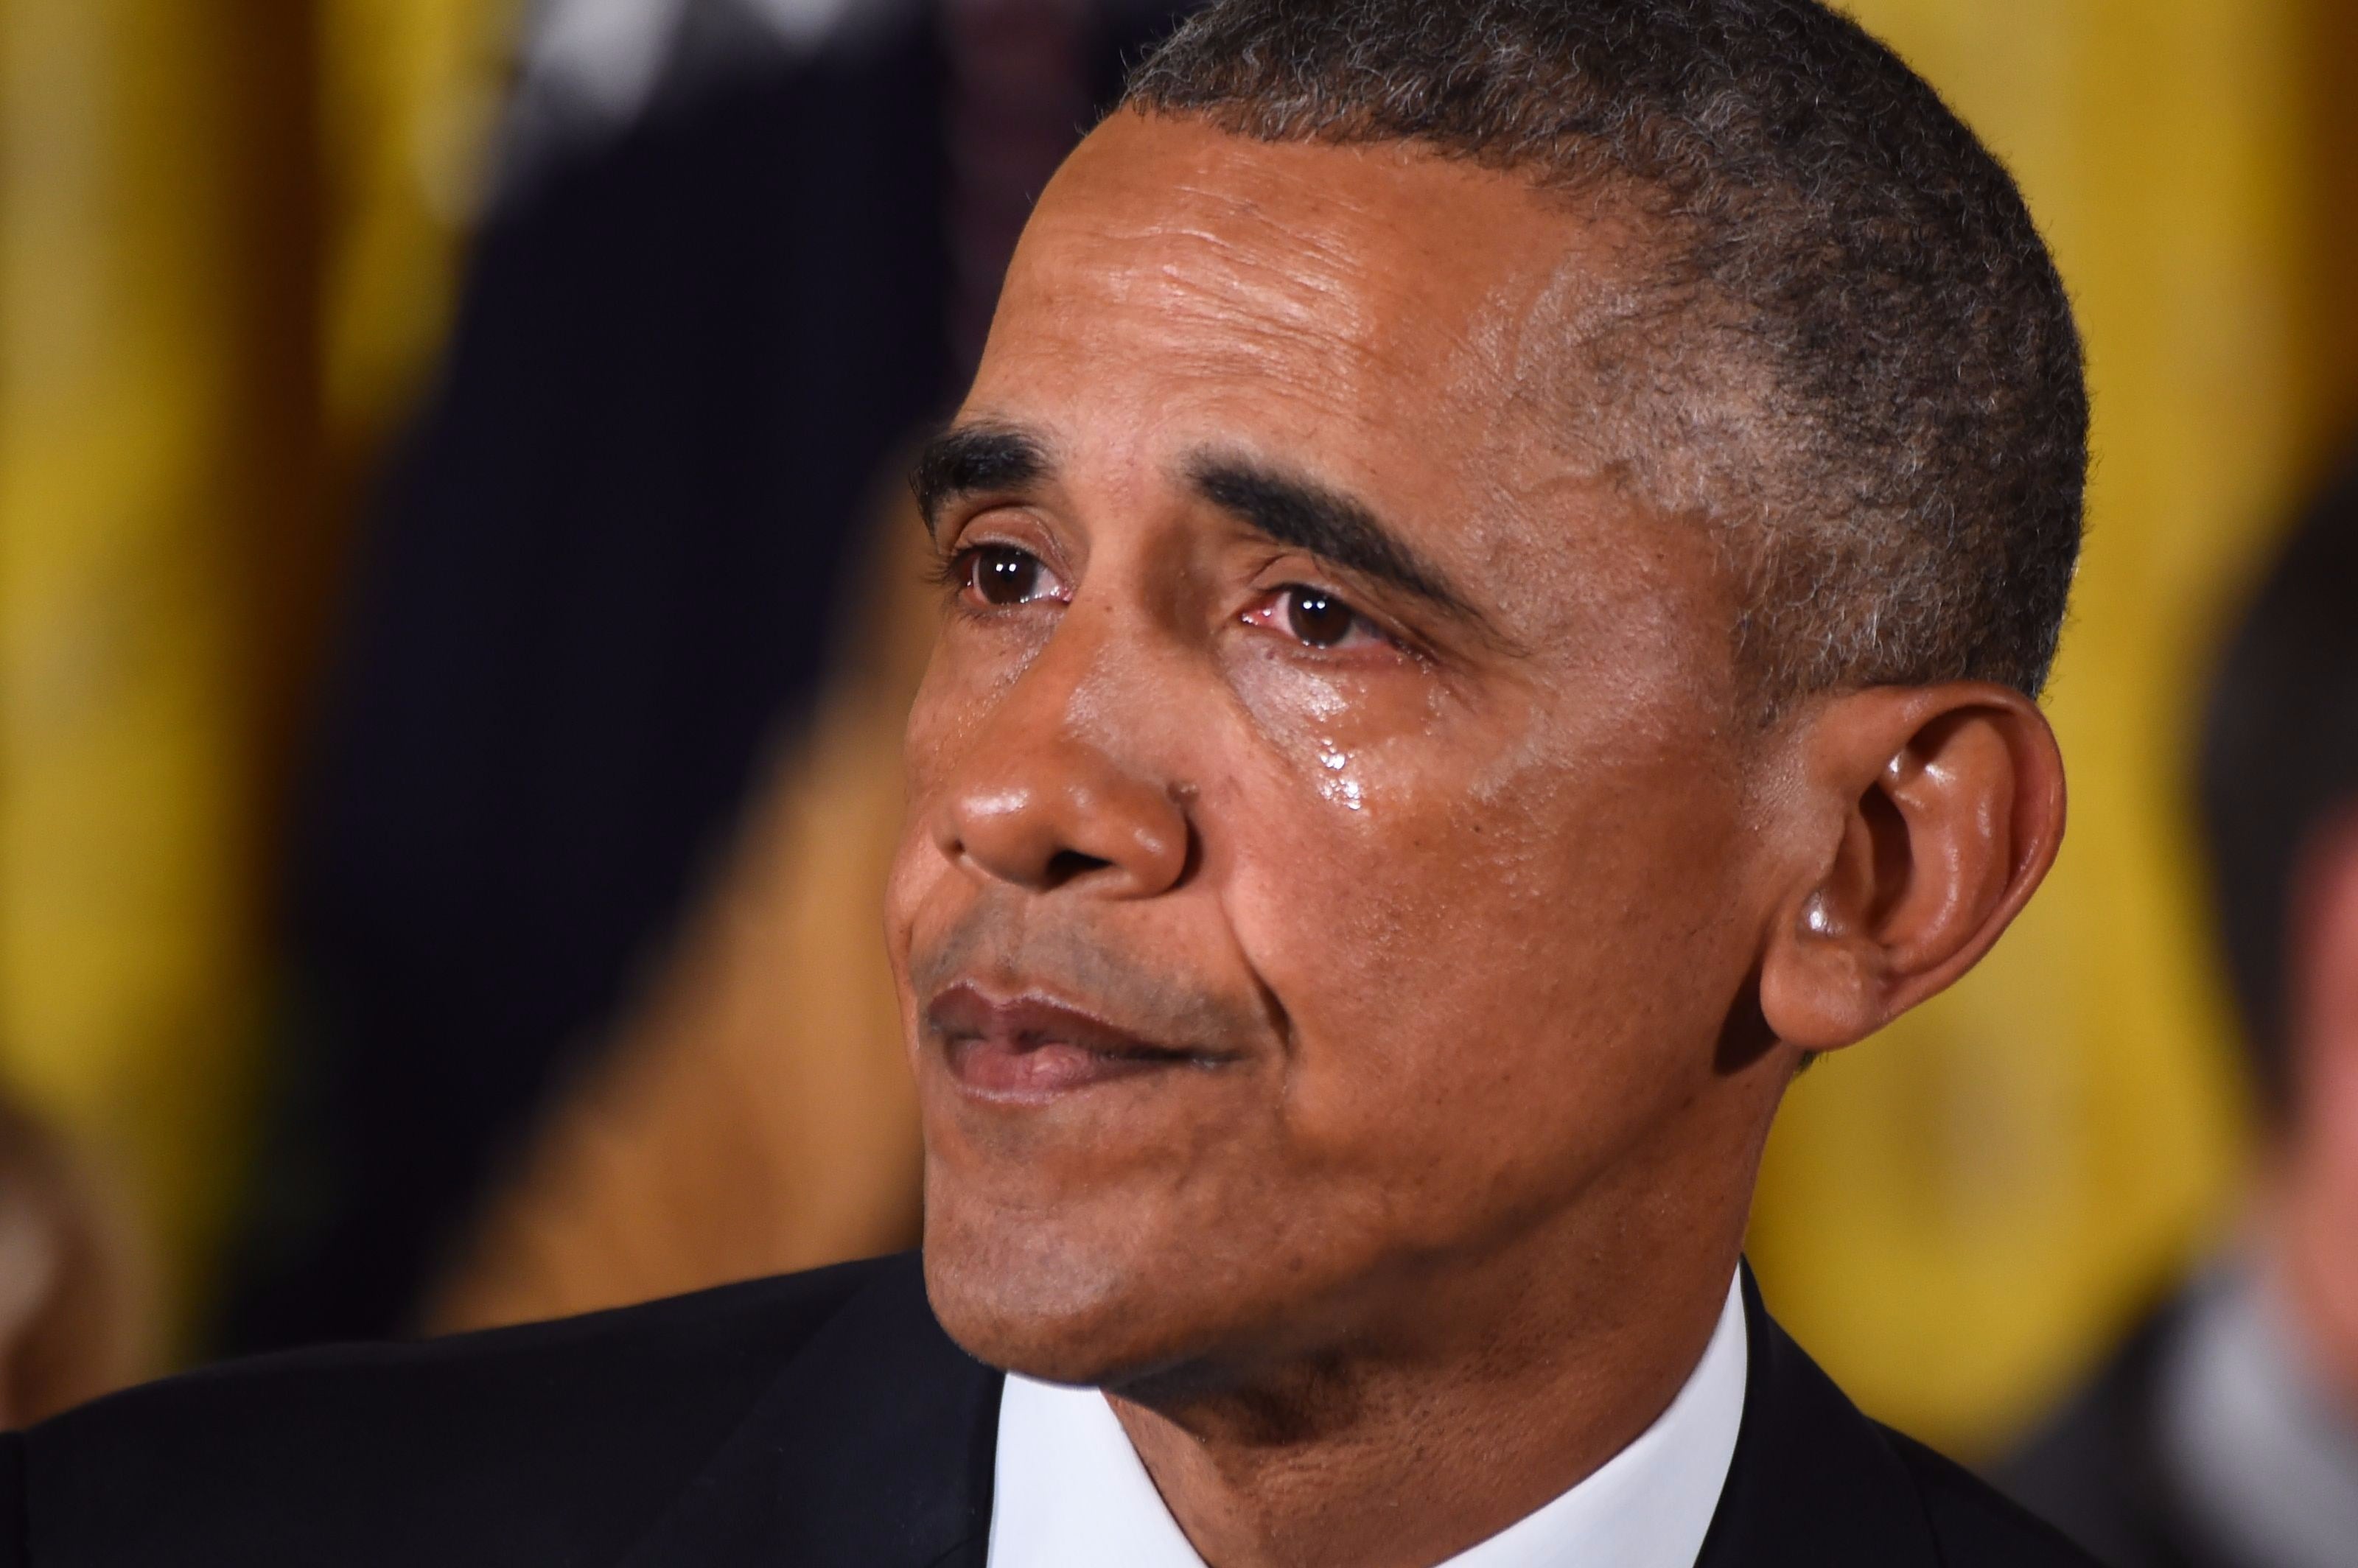 We Made It - Crying Obama